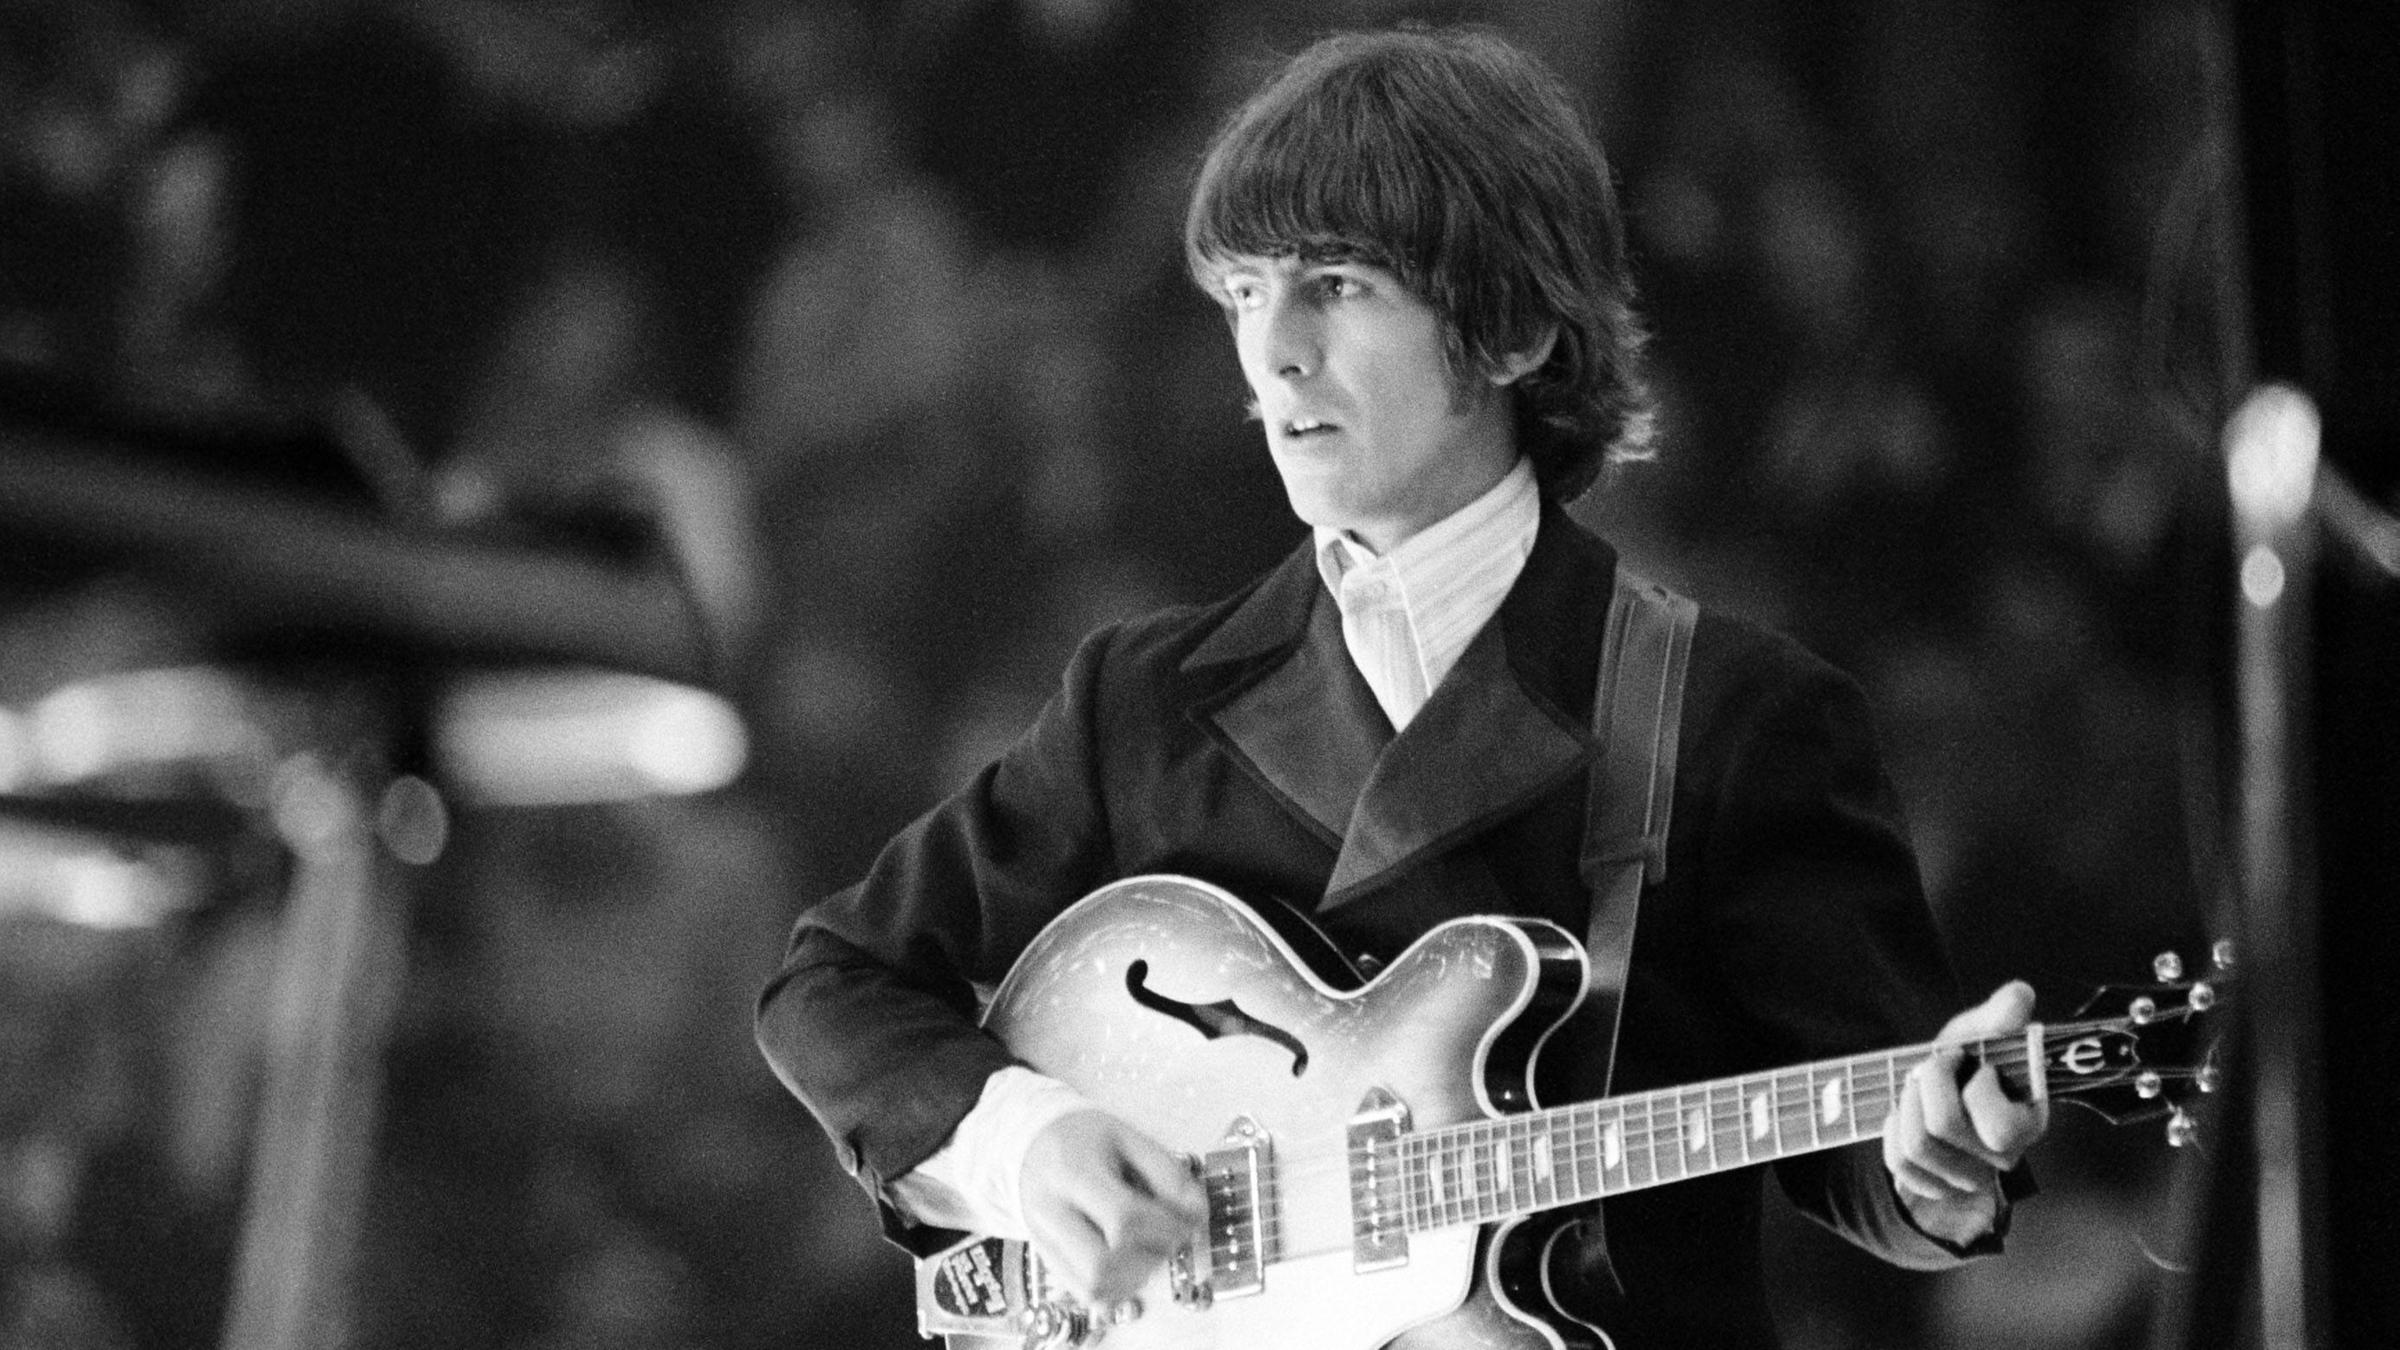 Beatles-Gitarrist George Harrison 1966 auf der Bühne in Essen, Deutschl...</p>

                        <a href=